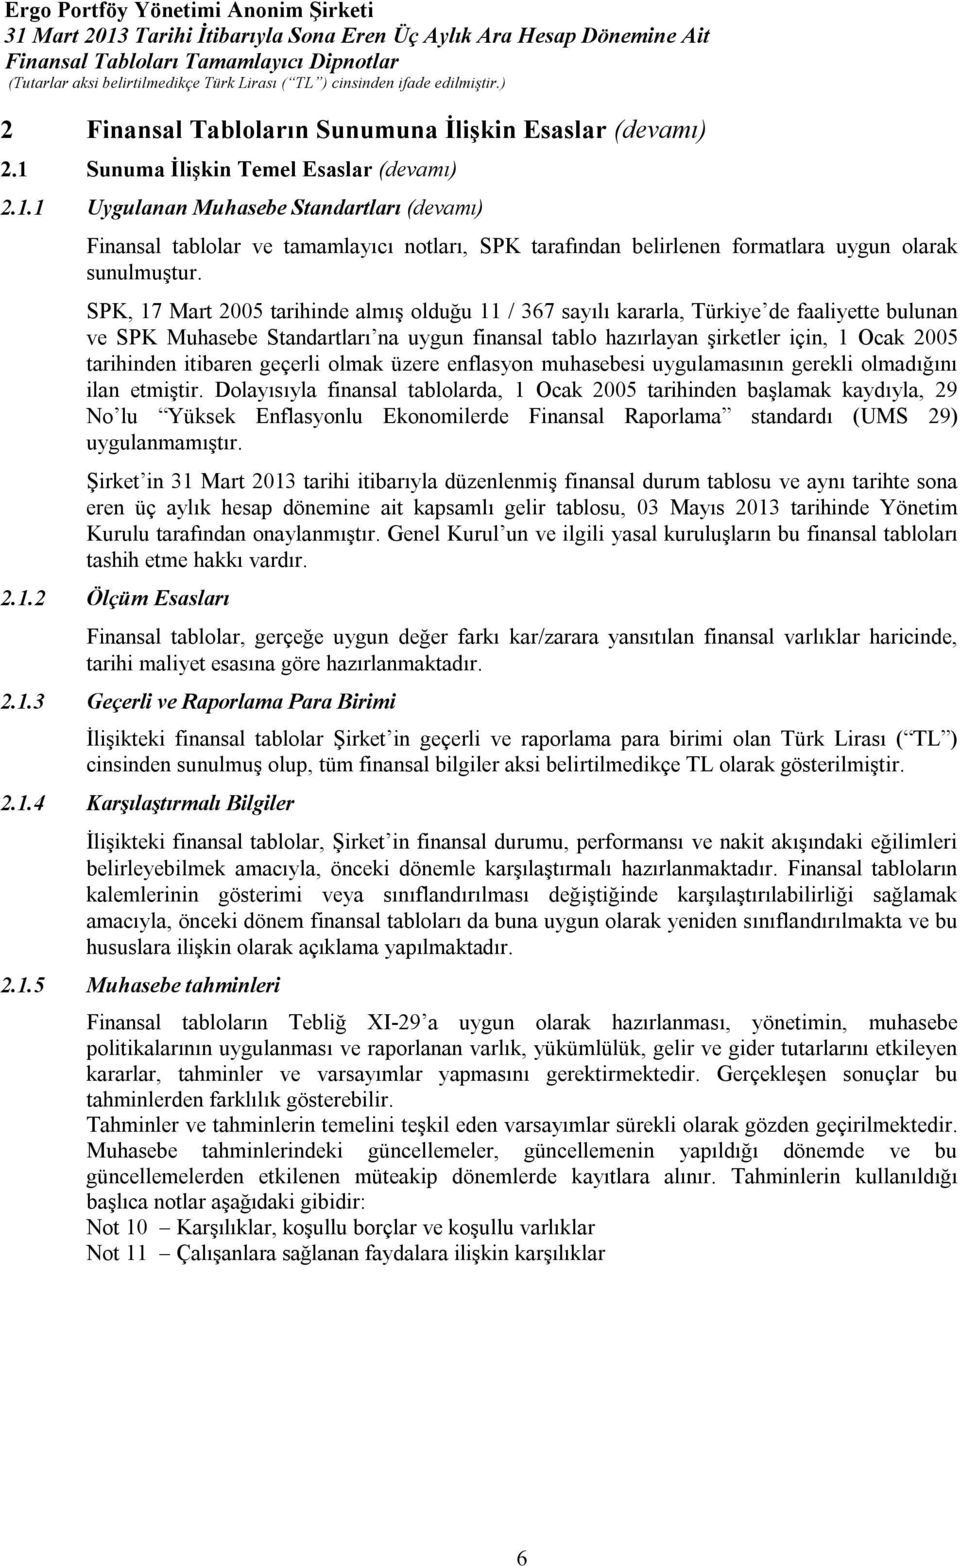 SPK, 17 Mart 2005 tarihinde almış olduğu 11 / 367 sayılı kararla, Türkiye de faaliyette bulunan ve SPK Muhasebe Standartları na uygun finansal tablo hazırlayan şirketler için, 1 Ocak 2005 tarihinden